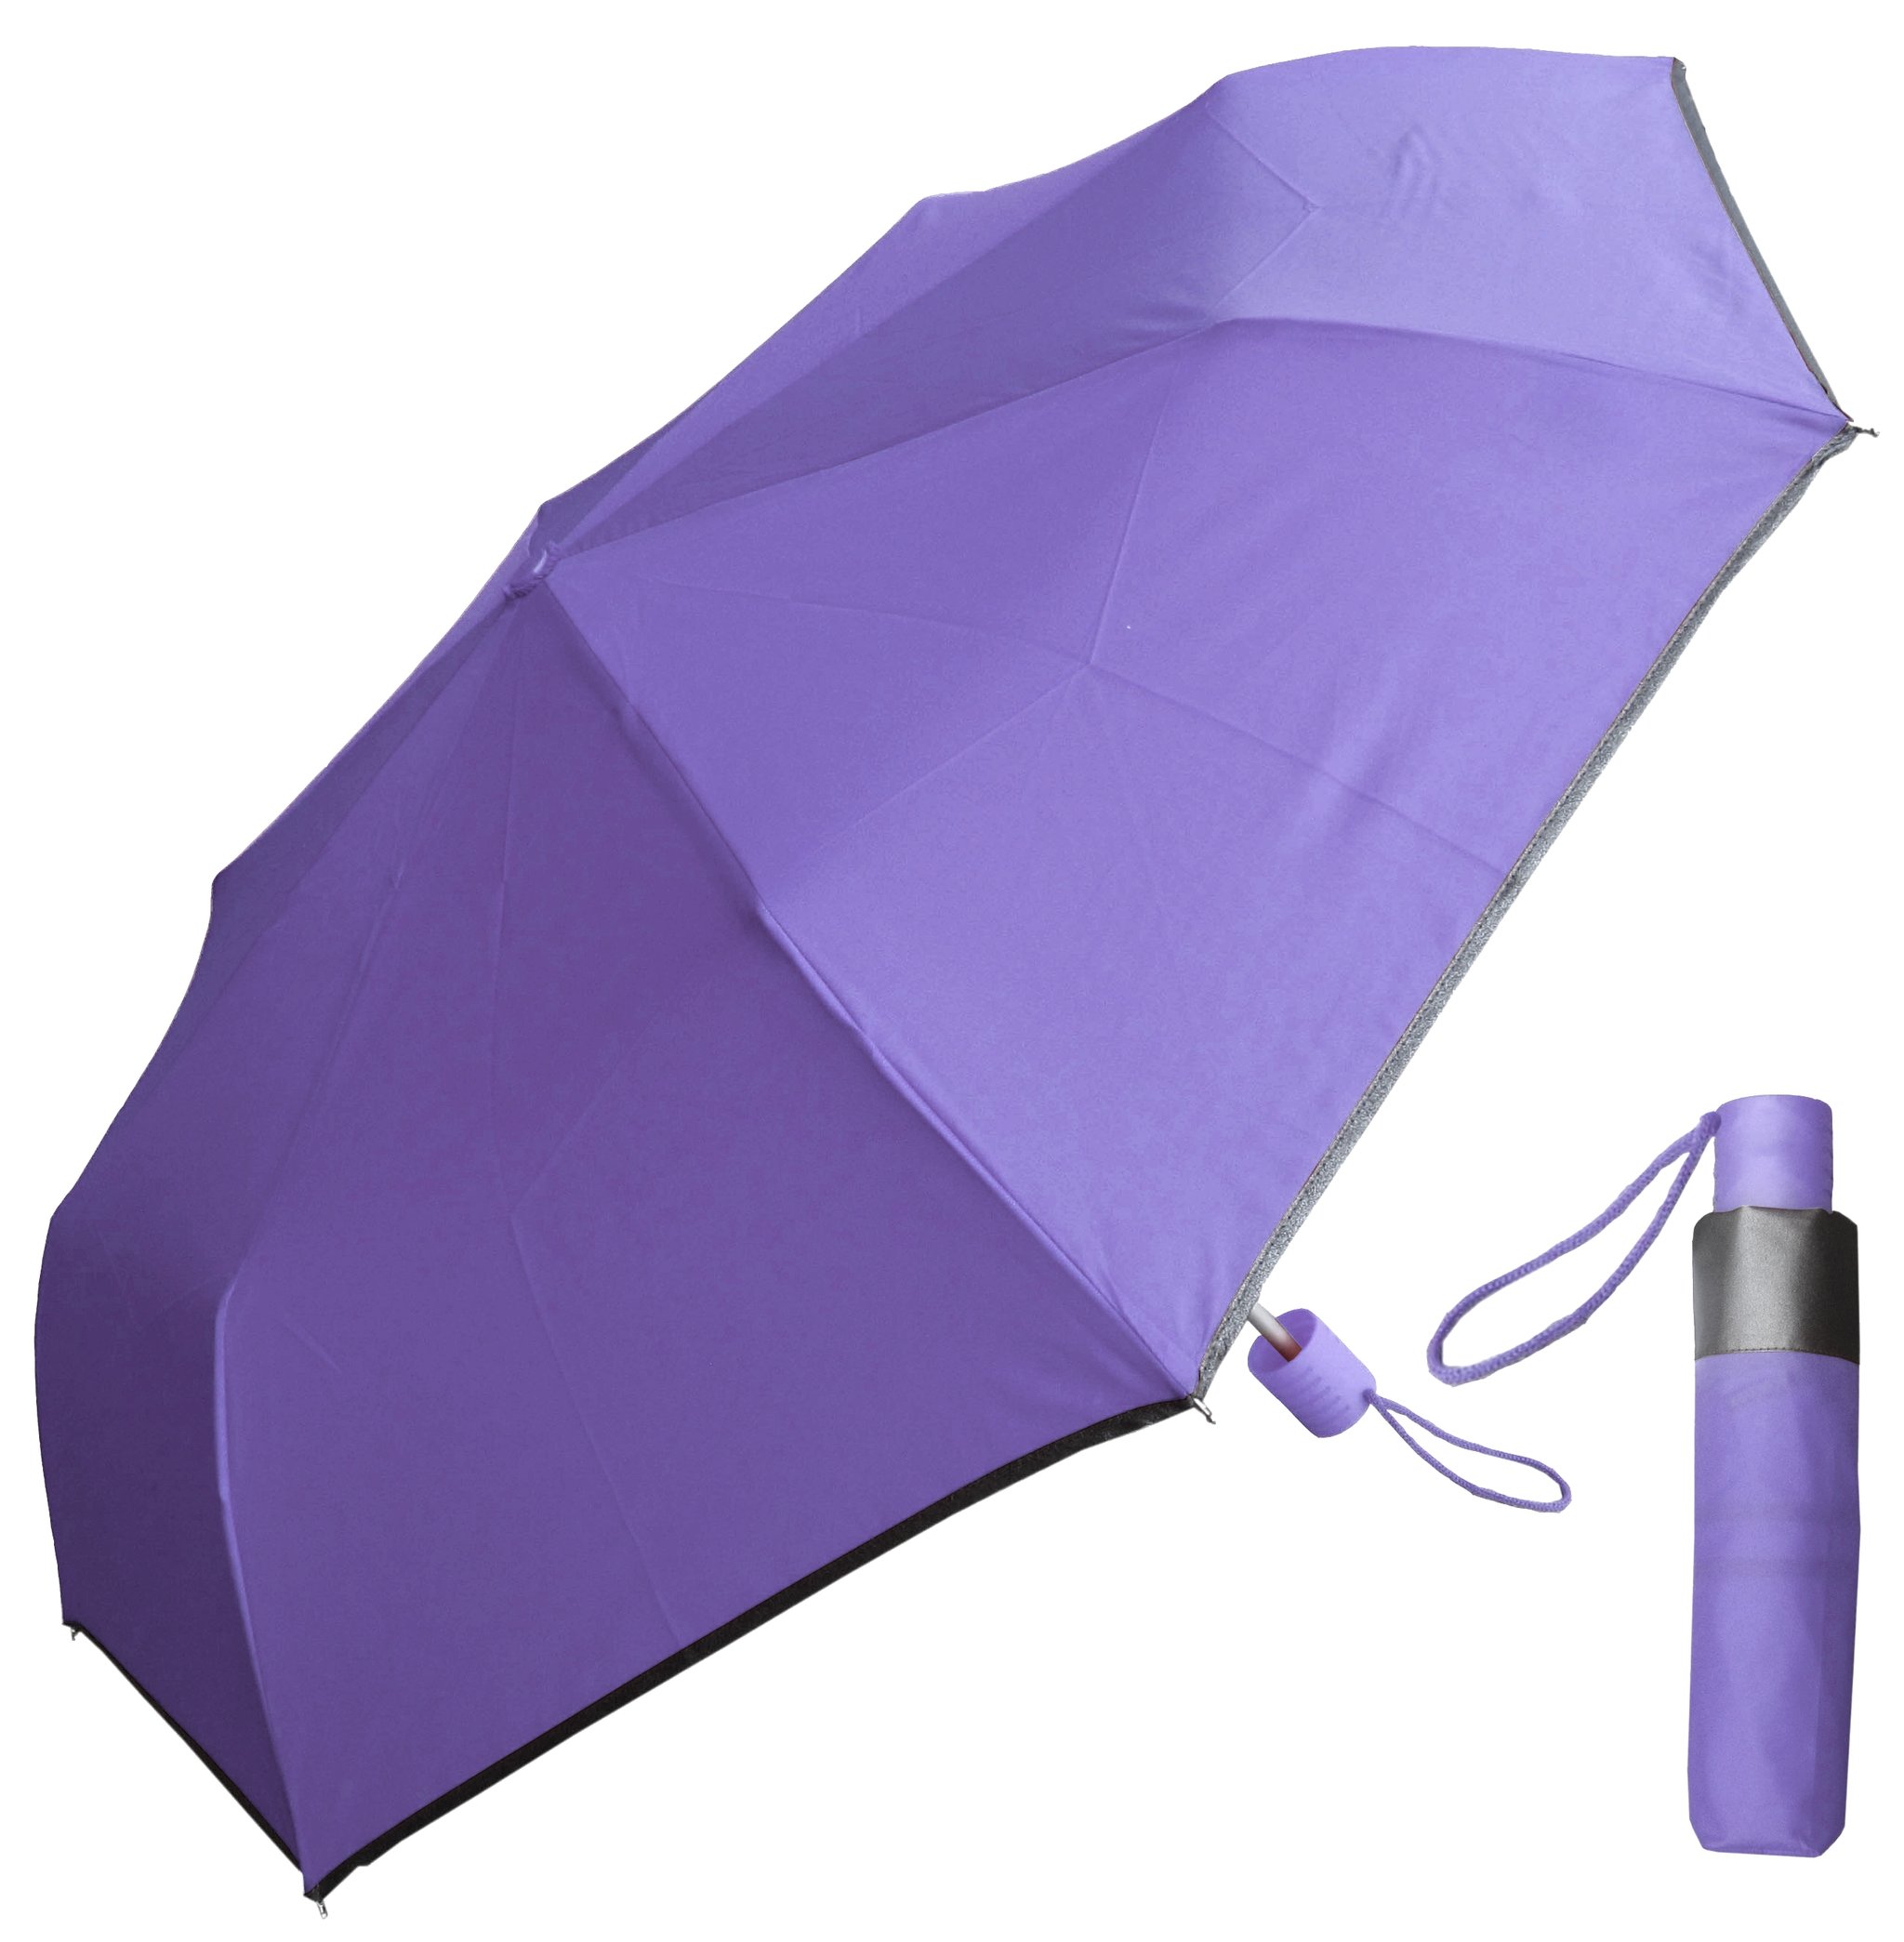 Reflektierender Rand 21inch * 8k, zusammenpassendes Farbengewebe, faltender Regenschirm und doppeltes Regenschirmgeschenk